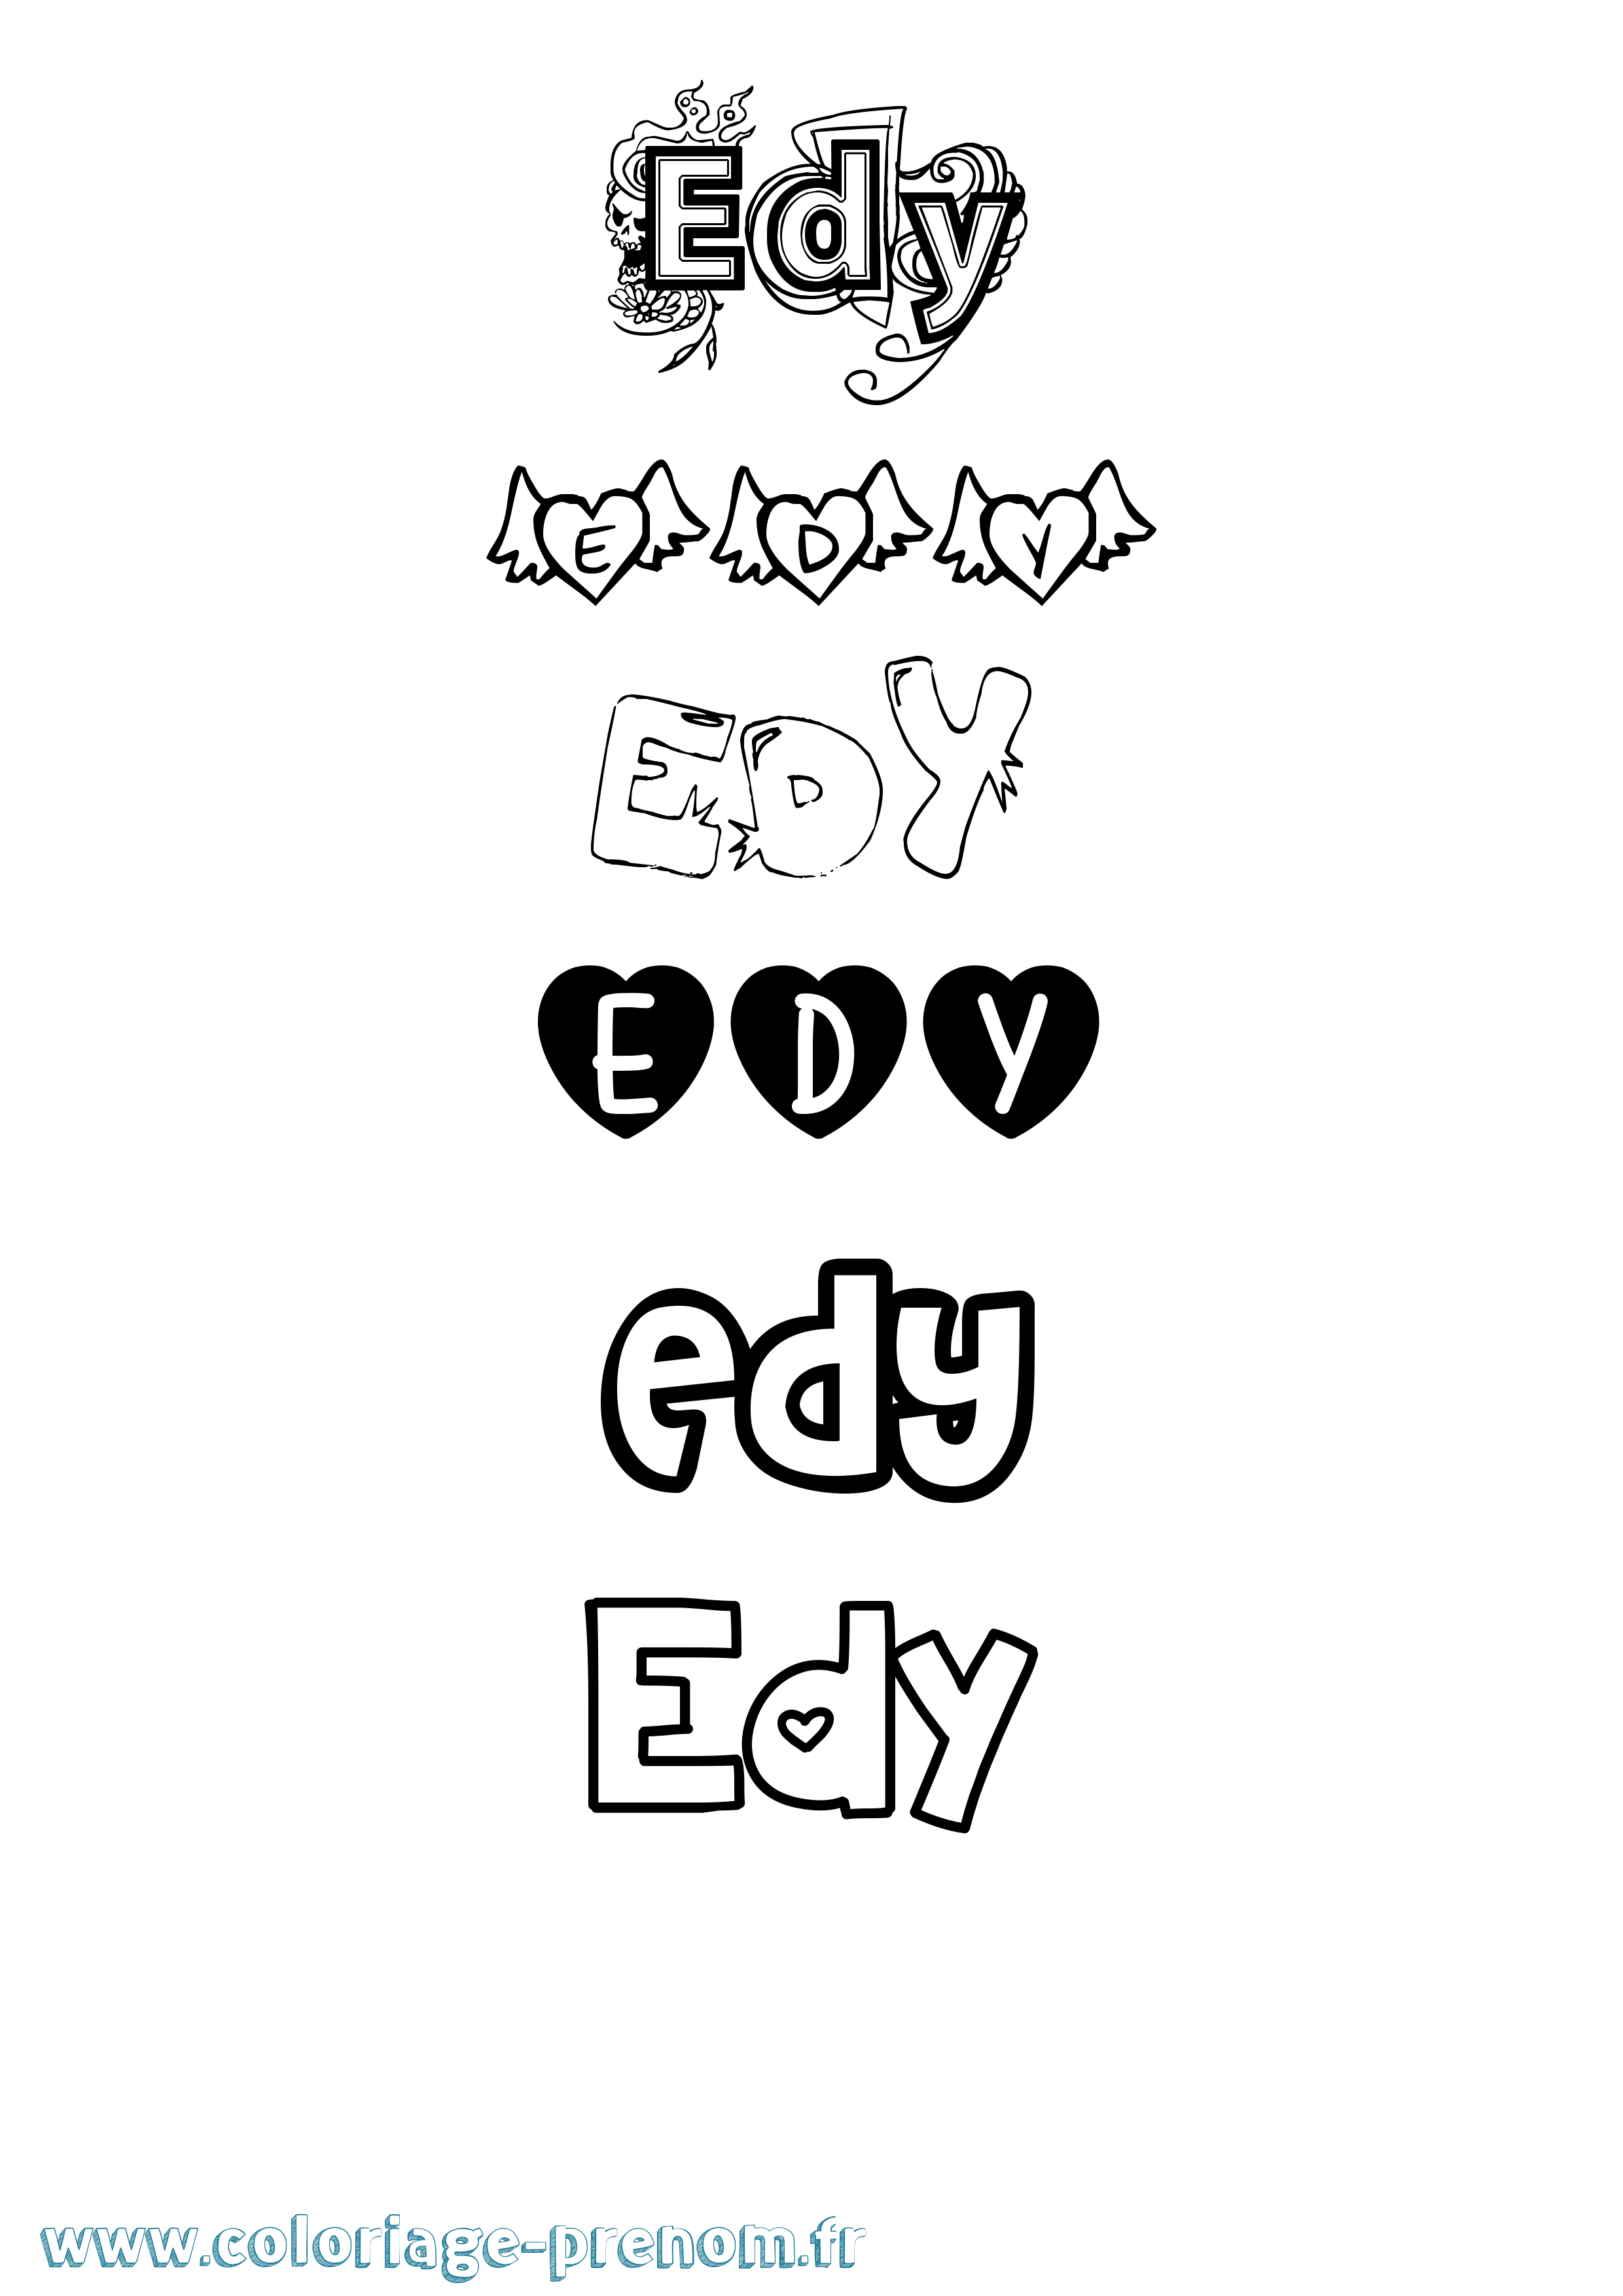 Coloriage prénom Edy Girly